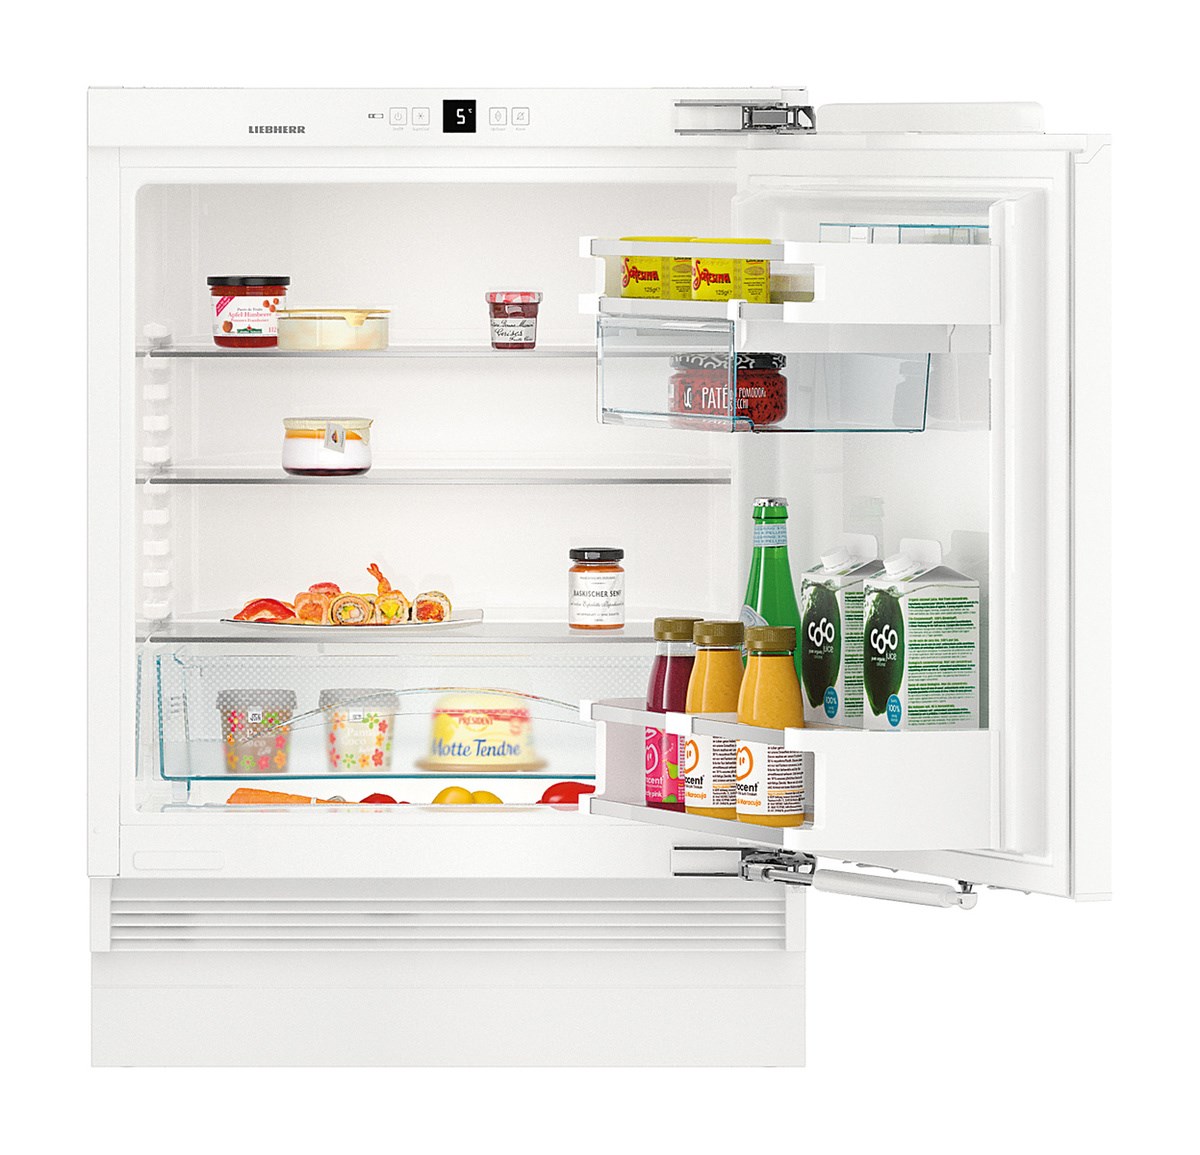 Холодильник встроенный под столешницу без морозильной камеры